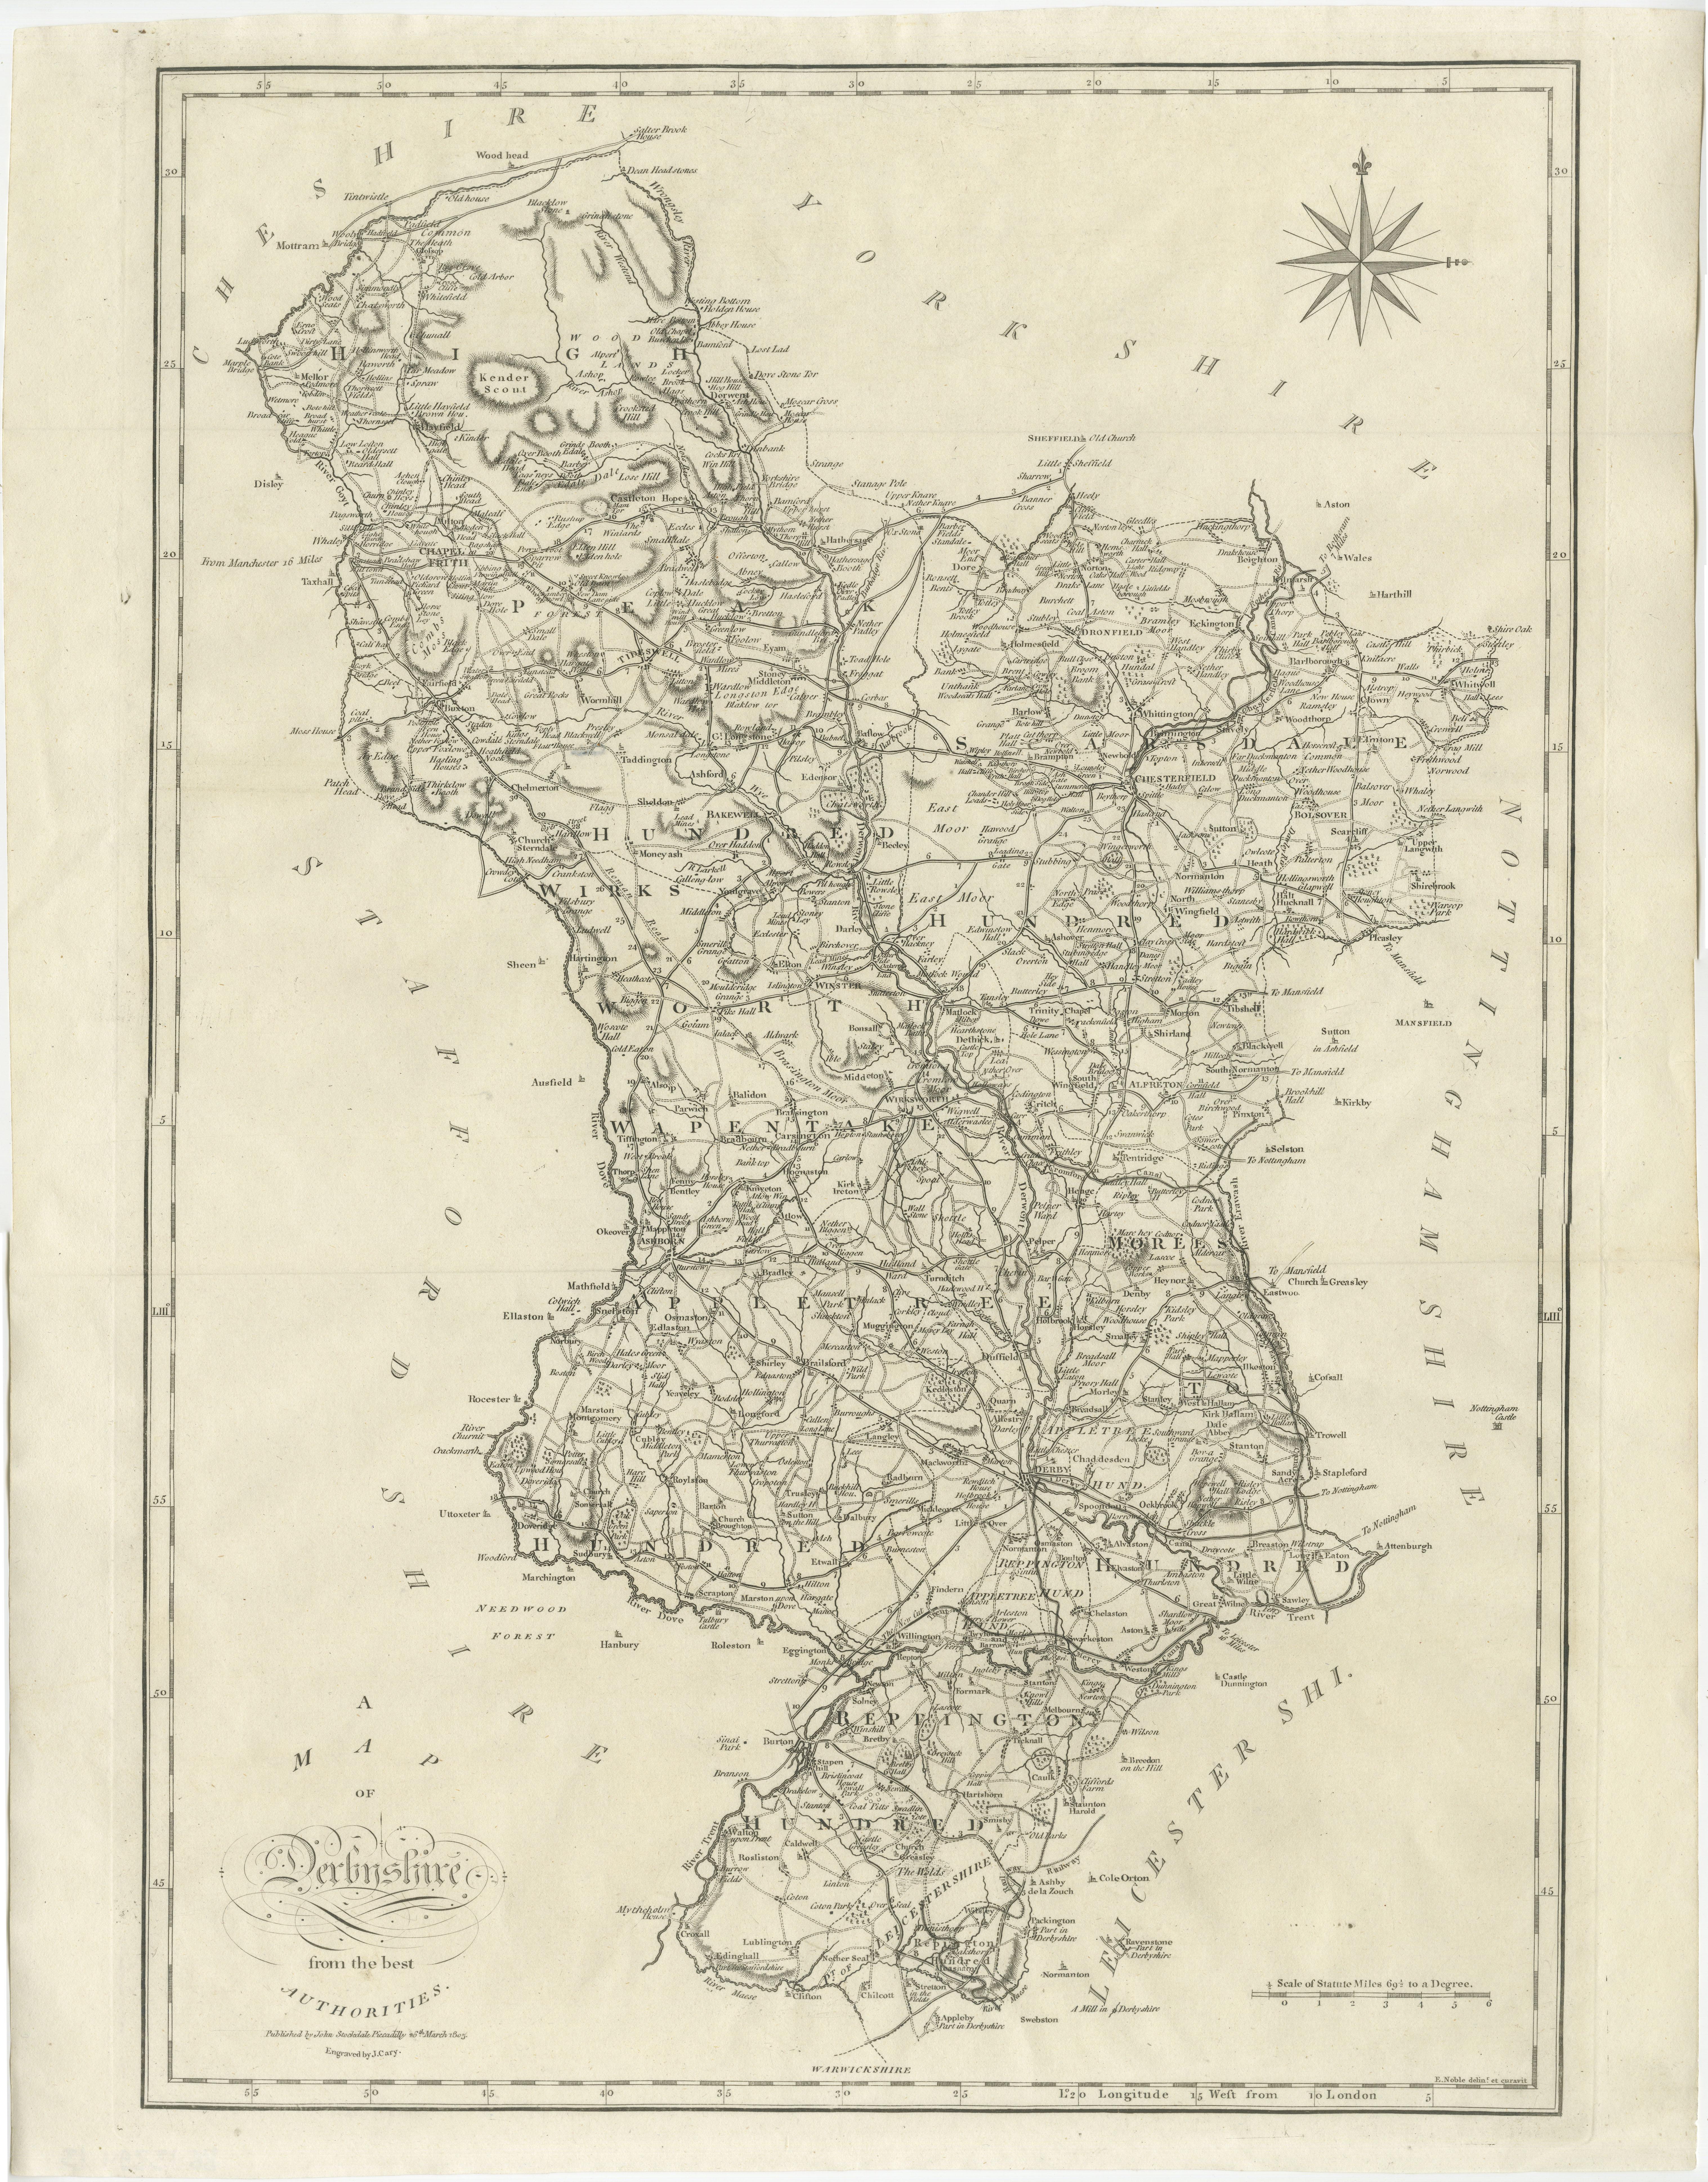 Antike Karte mit dem Titel 'A Map of Derbyshire from the best Authorities'. Original alte Grafschaftskarte von Derbyshire, England. Gestochen von John Cary's. Stammt aus dem 